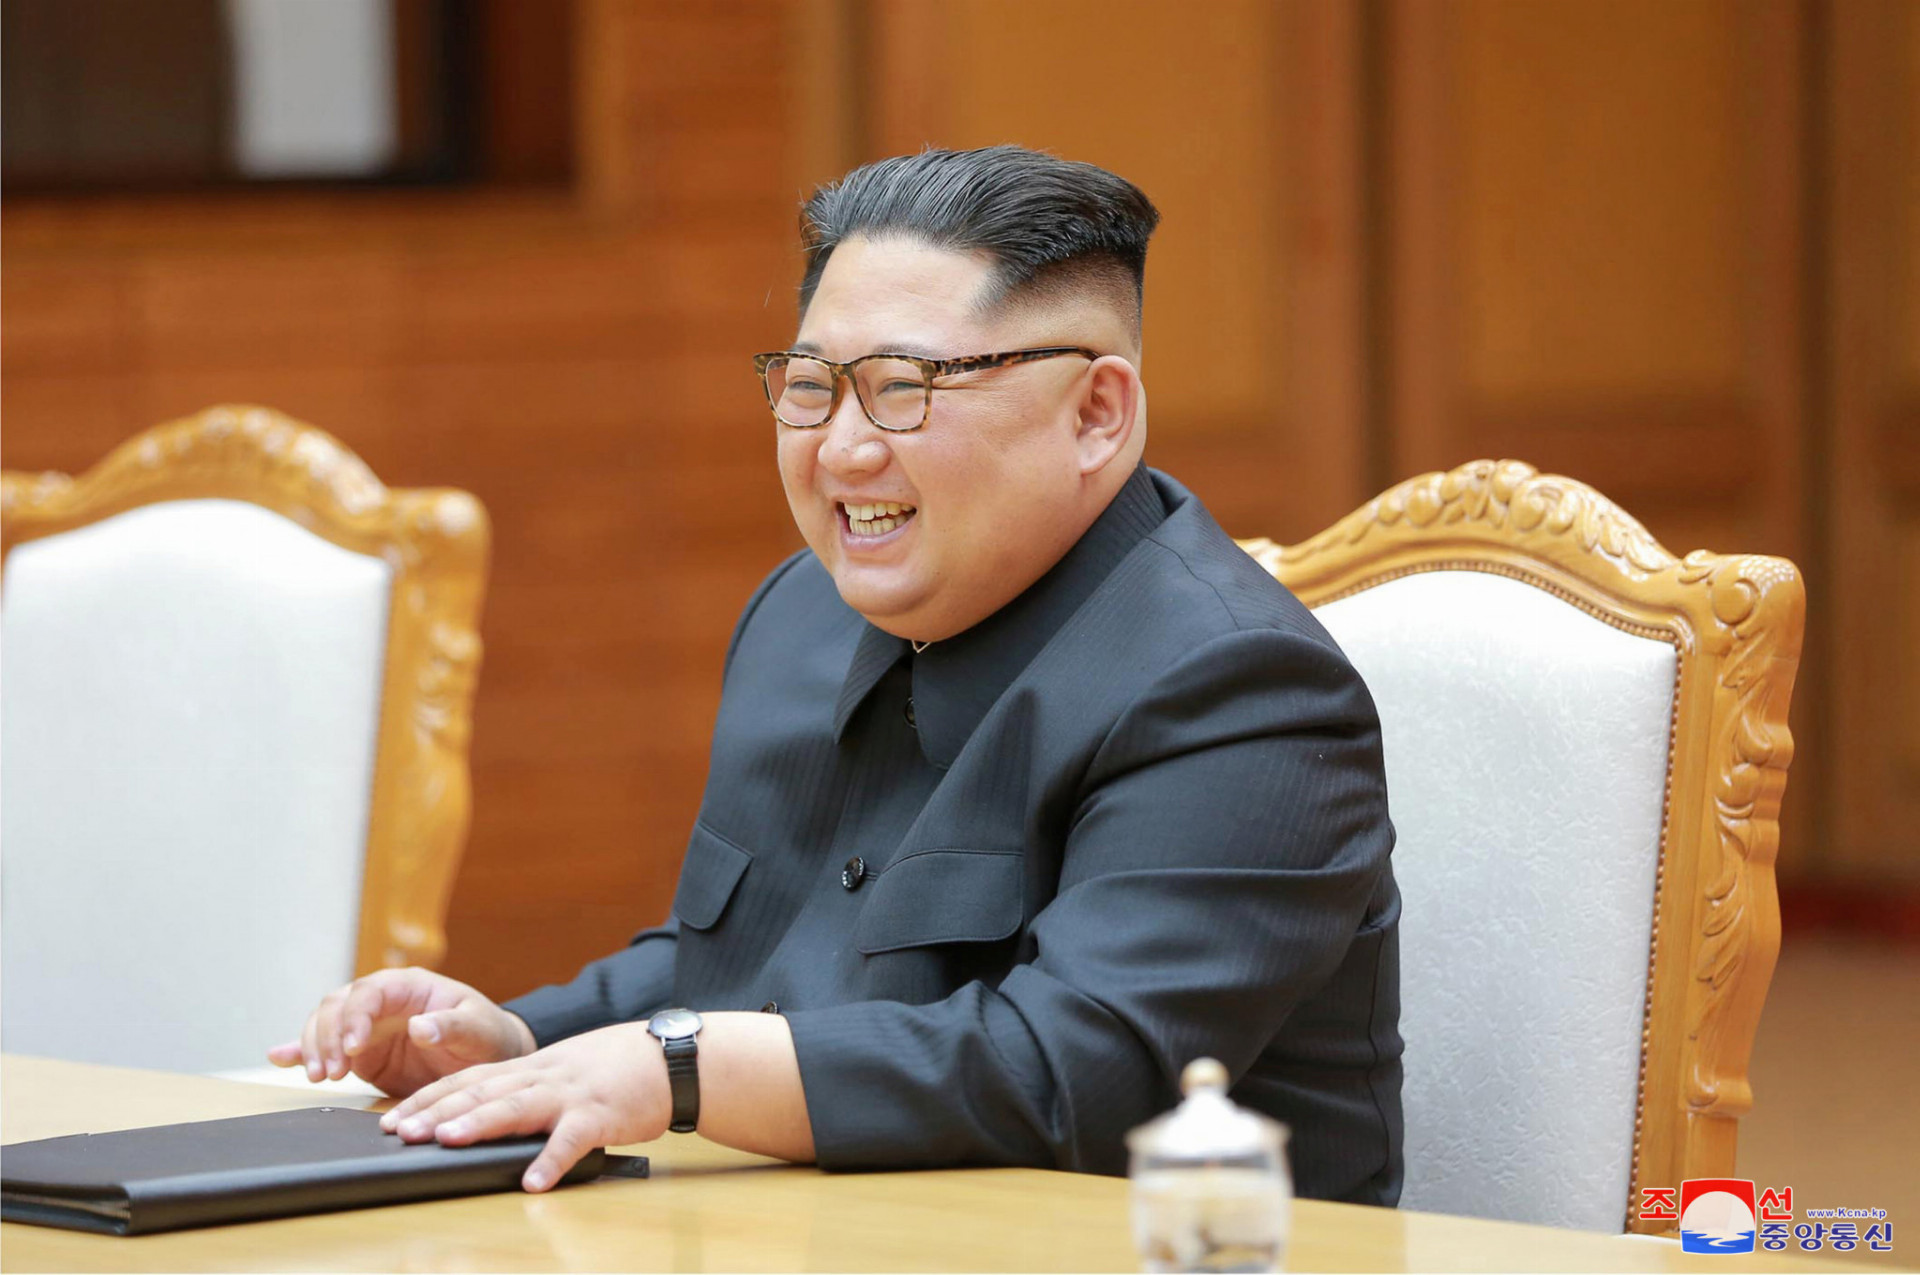 Severokórejský vodca Kim Čong-un si doviezol na summit v Singapure vlastnú prenosnú toaletu. Podľa juhokórejského denníka Čoson ilbo tak chce zabrániť tomu, aby cudzie rozviedky mohli zistiť podrobnosti o jeho zdravotnom stave.
Prenosné zariadenie ochráni "stolicu najvyššieho vodcu", aby sa k nej nedostali "odhodlaní čističi stôk", tvrdí denník.

Nielen pre KĽDR sú zrejme exkrementy ich najvyššieho predstaviteľa prísne stráženým tajomstvom. Je známe, že za éry sovietskeho vodcu Josifa Stalina analyzovali výkaly cudzích štátnikov ruskí vedci s cieľom zistiť o nich čo najviac podrobností.